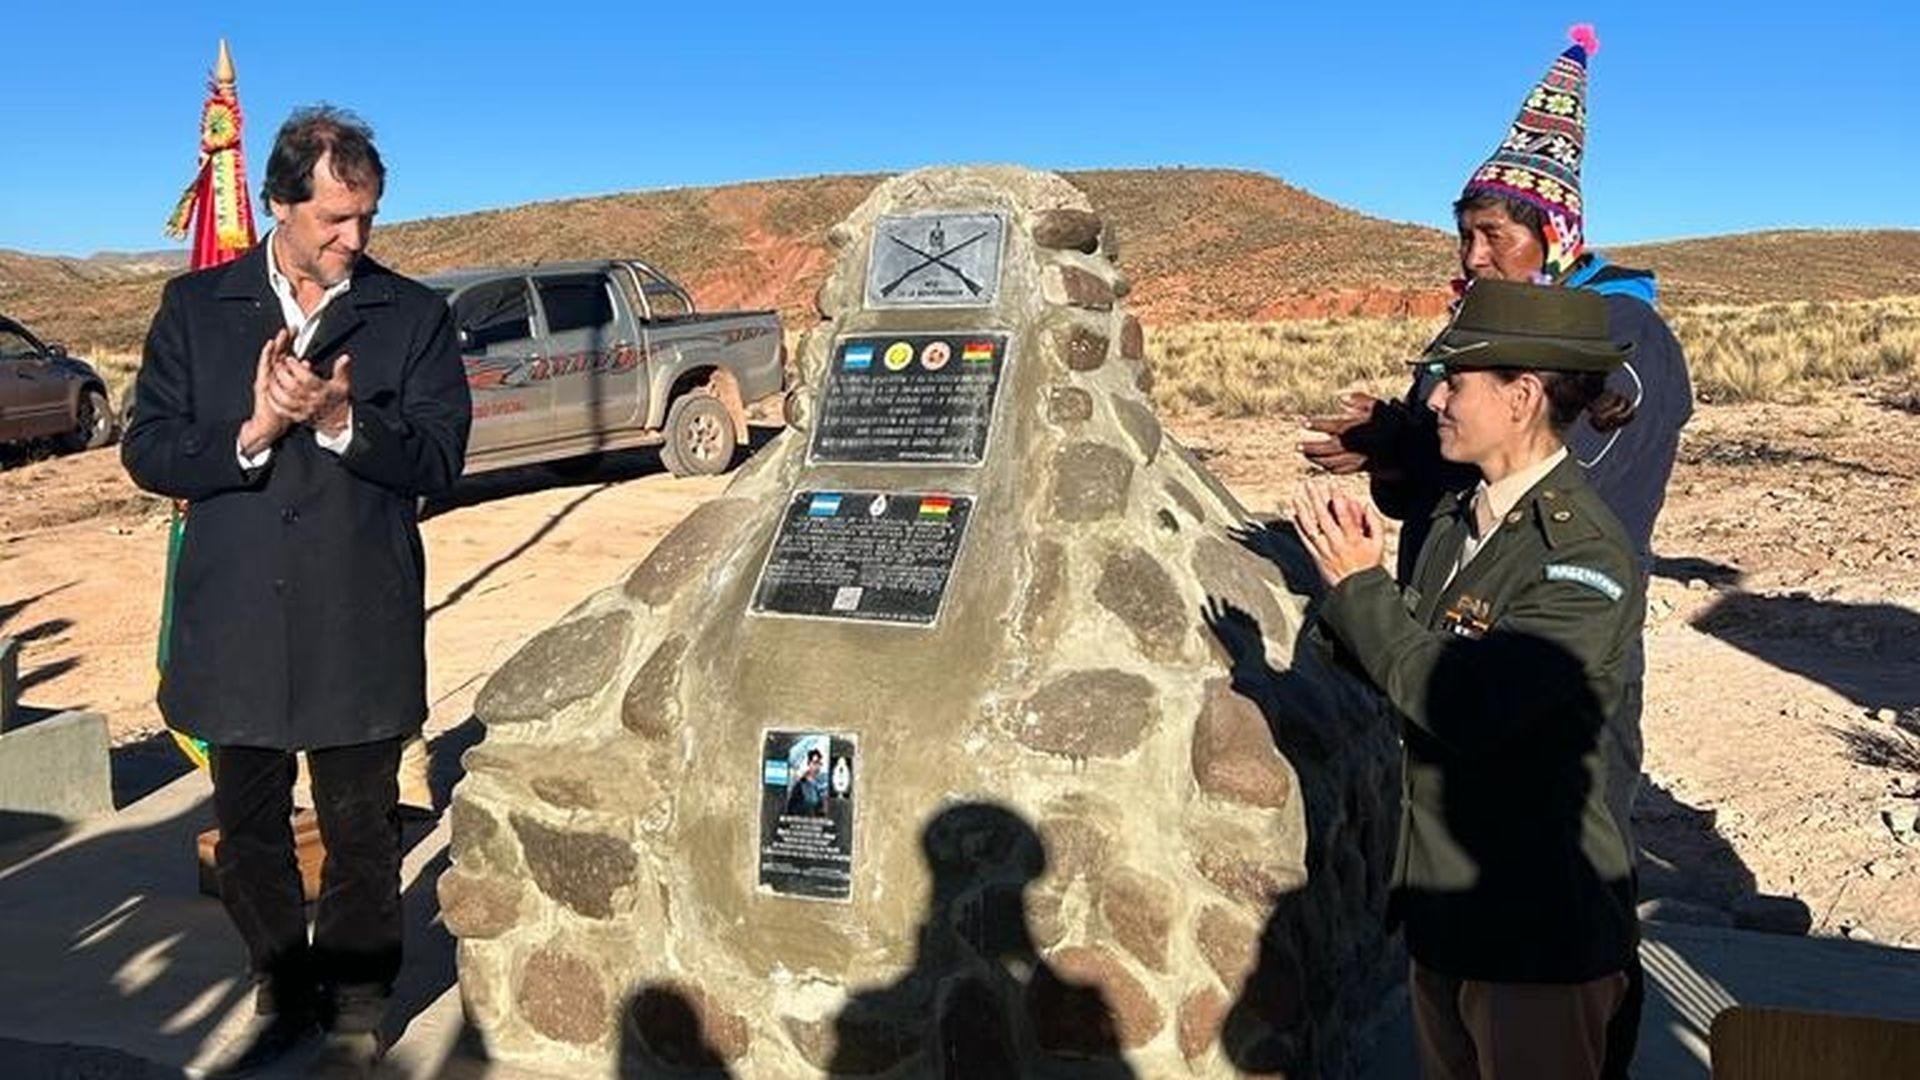 El embajador argentino en Bolivia en el descubrimiento de la placa en reconocimiento a la capitán María Remedios del Valle, en el hito de Ayohuma